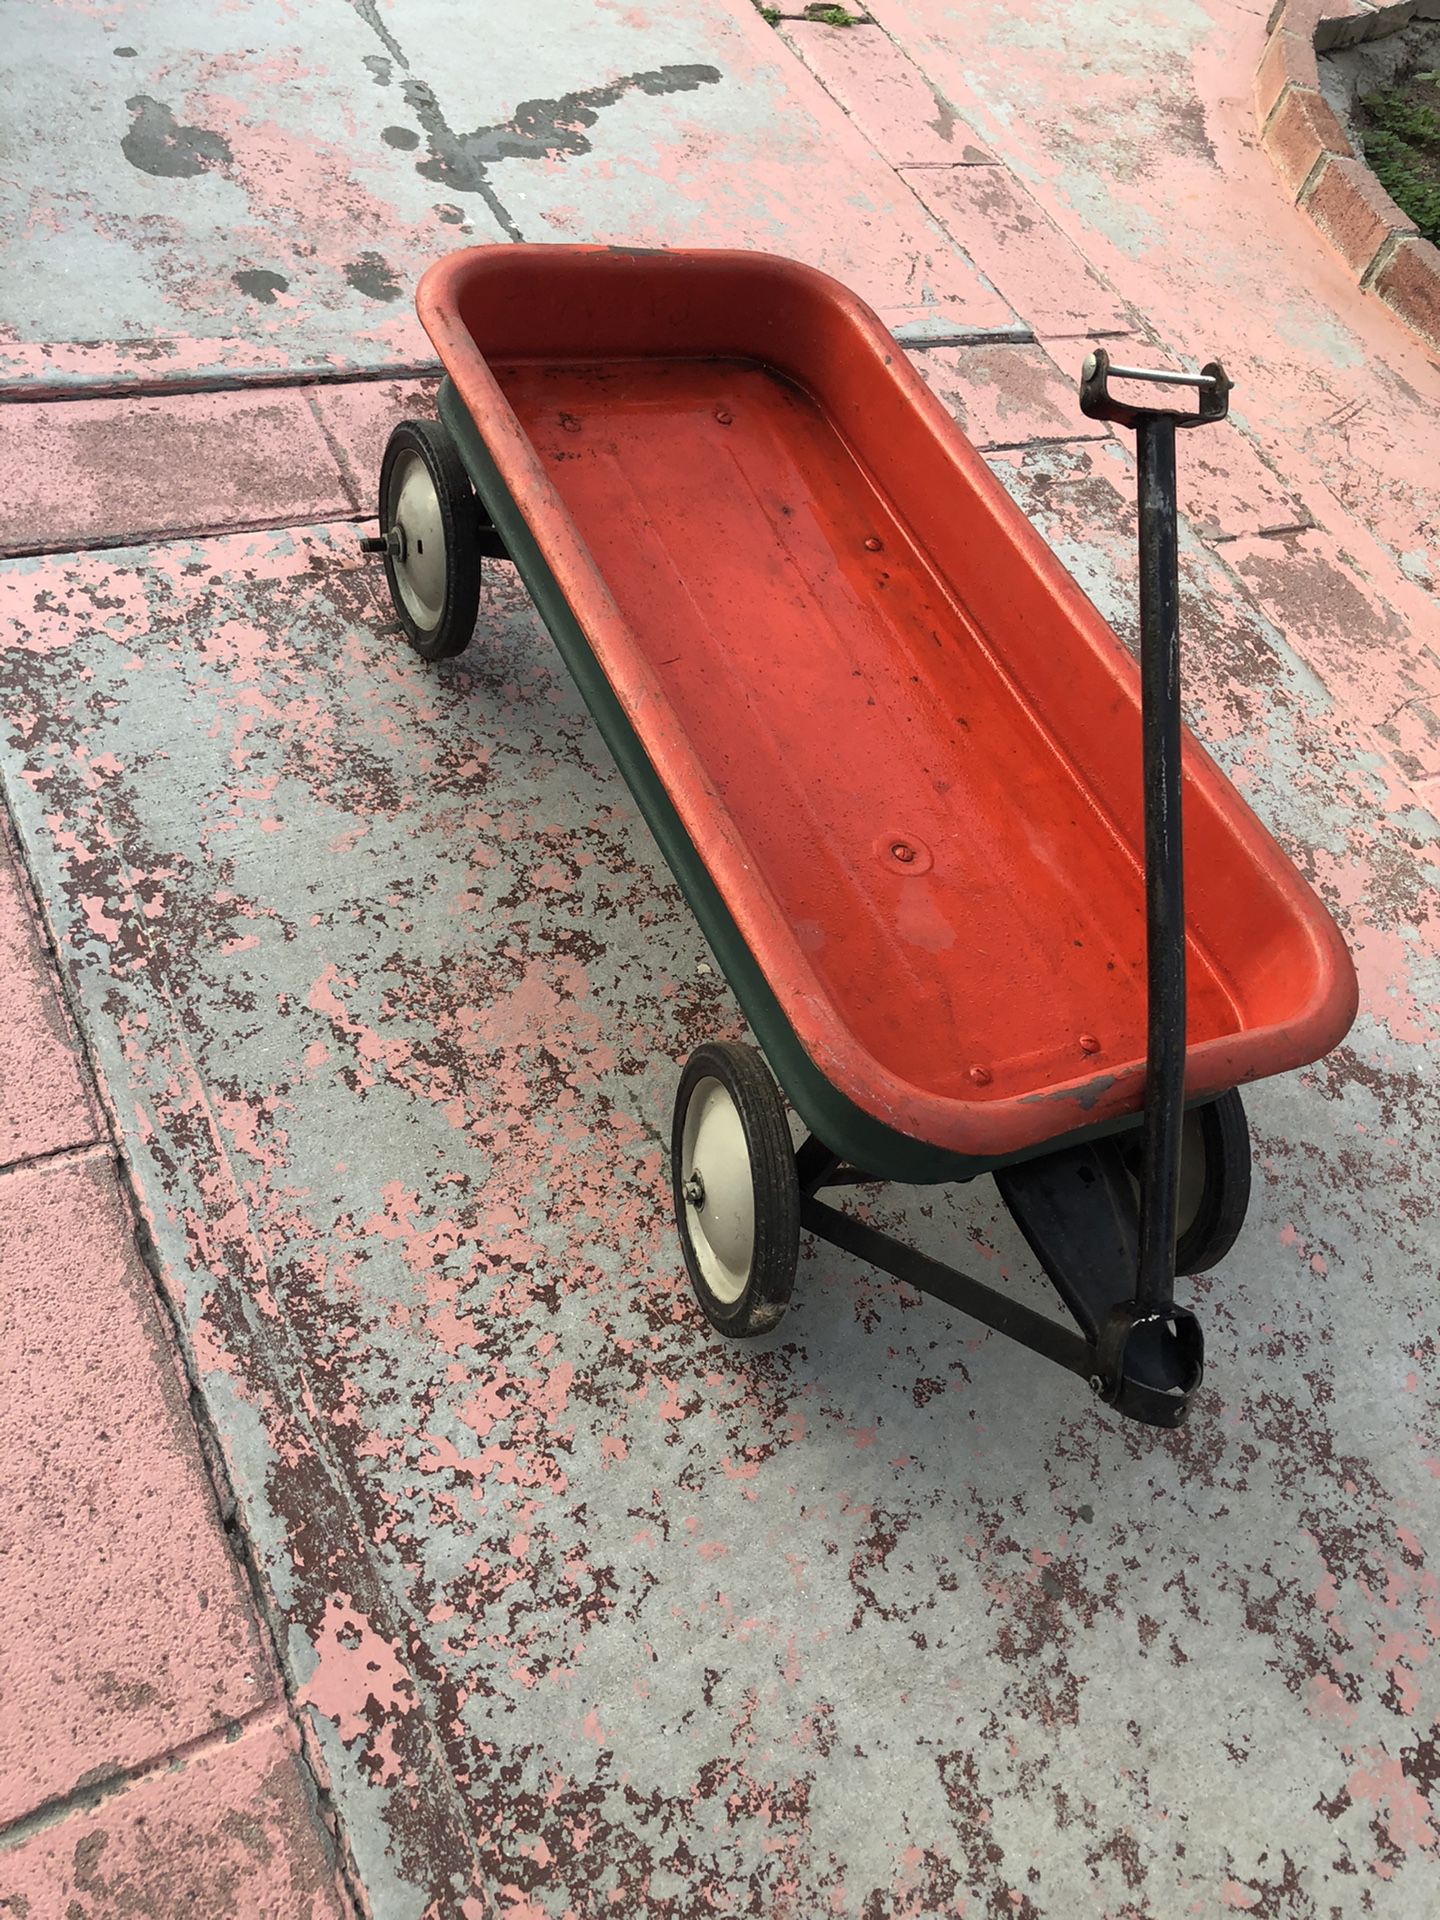 Wagon cart